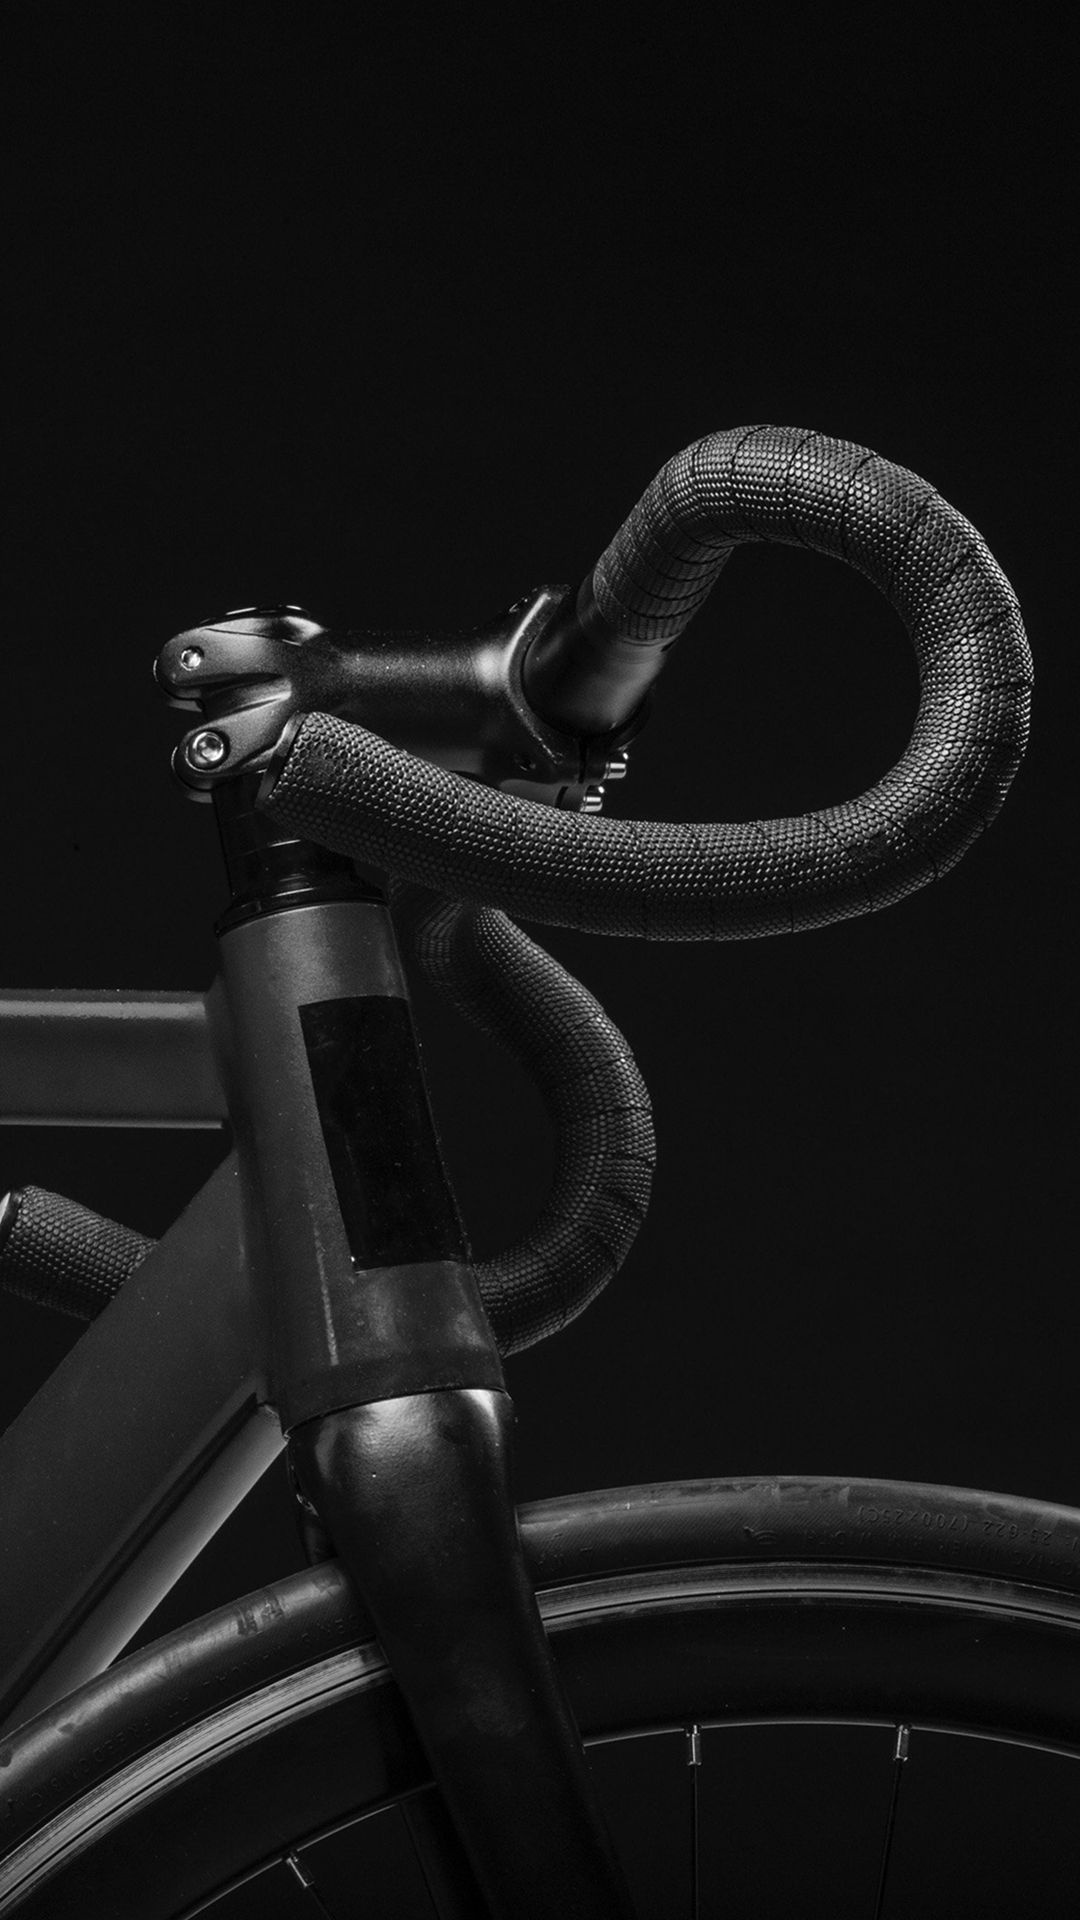 Trek Bikes, Dark minimal, Nature iPhone, Bike photography, 1080x1920 Full HD Handy